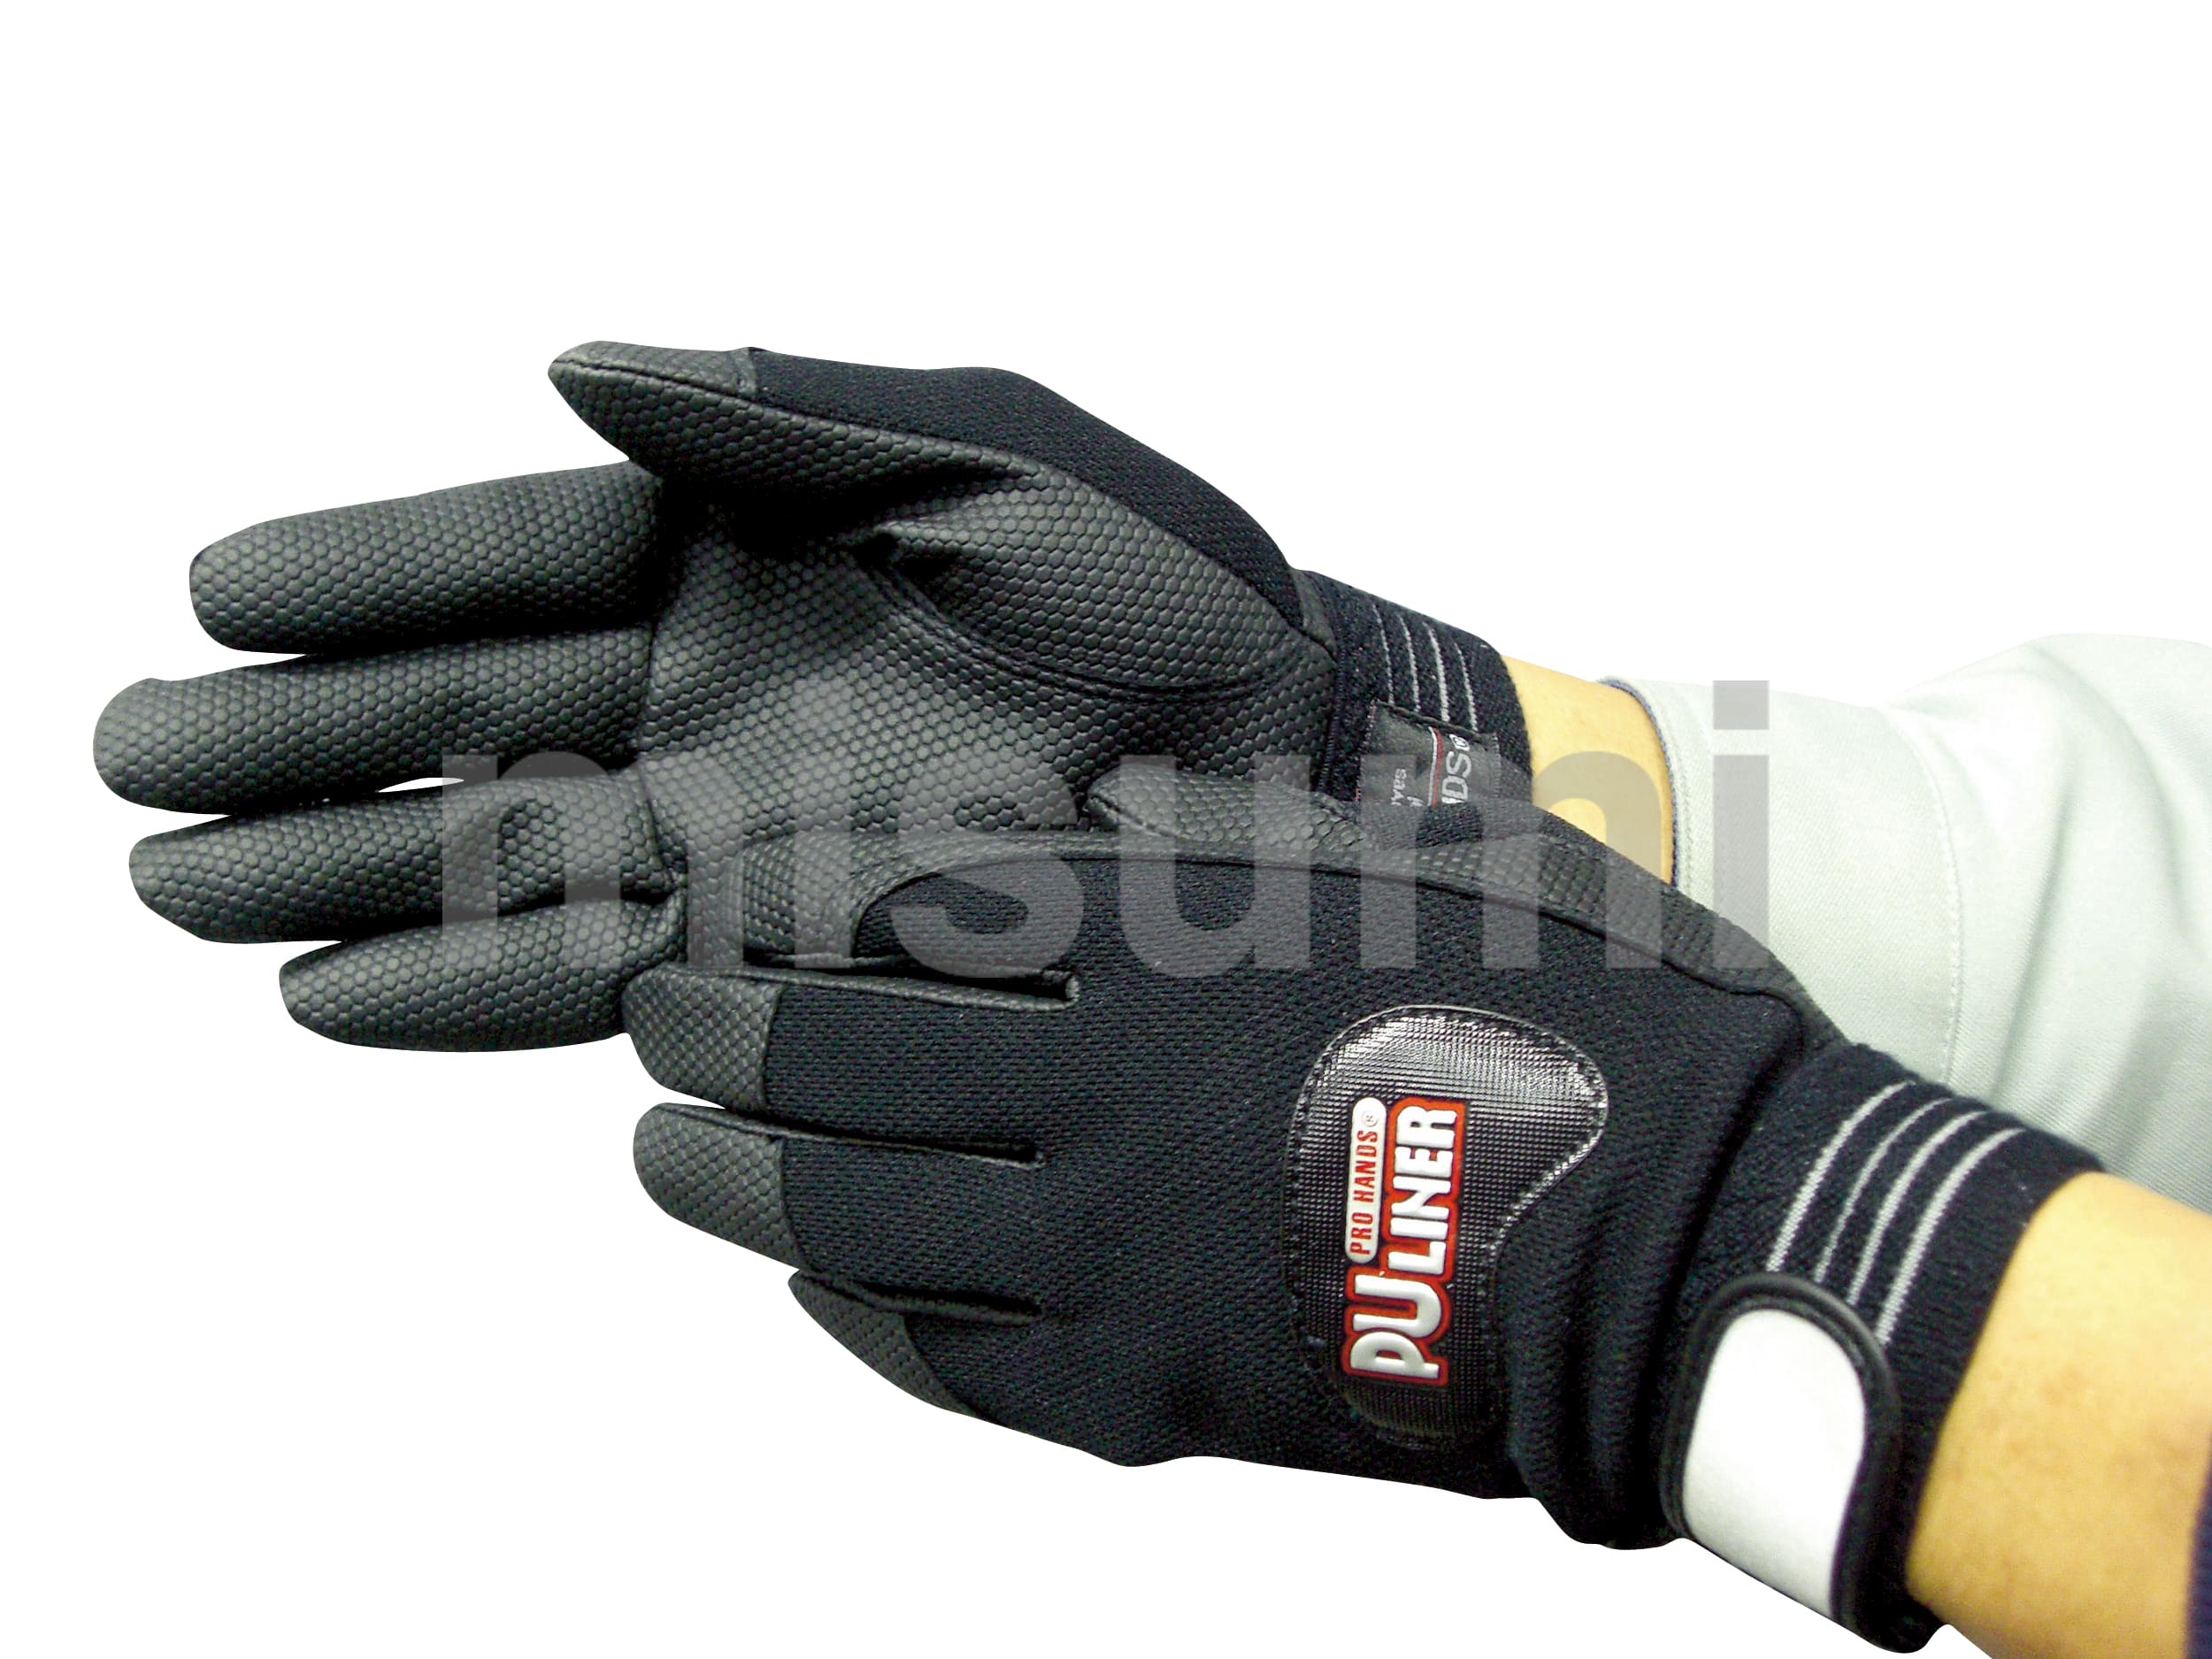 富士グローブ PUライナーアルファブラック 合成皮革手袋 黒色 Lサイズ 10双組 日本製素材使用 - 2